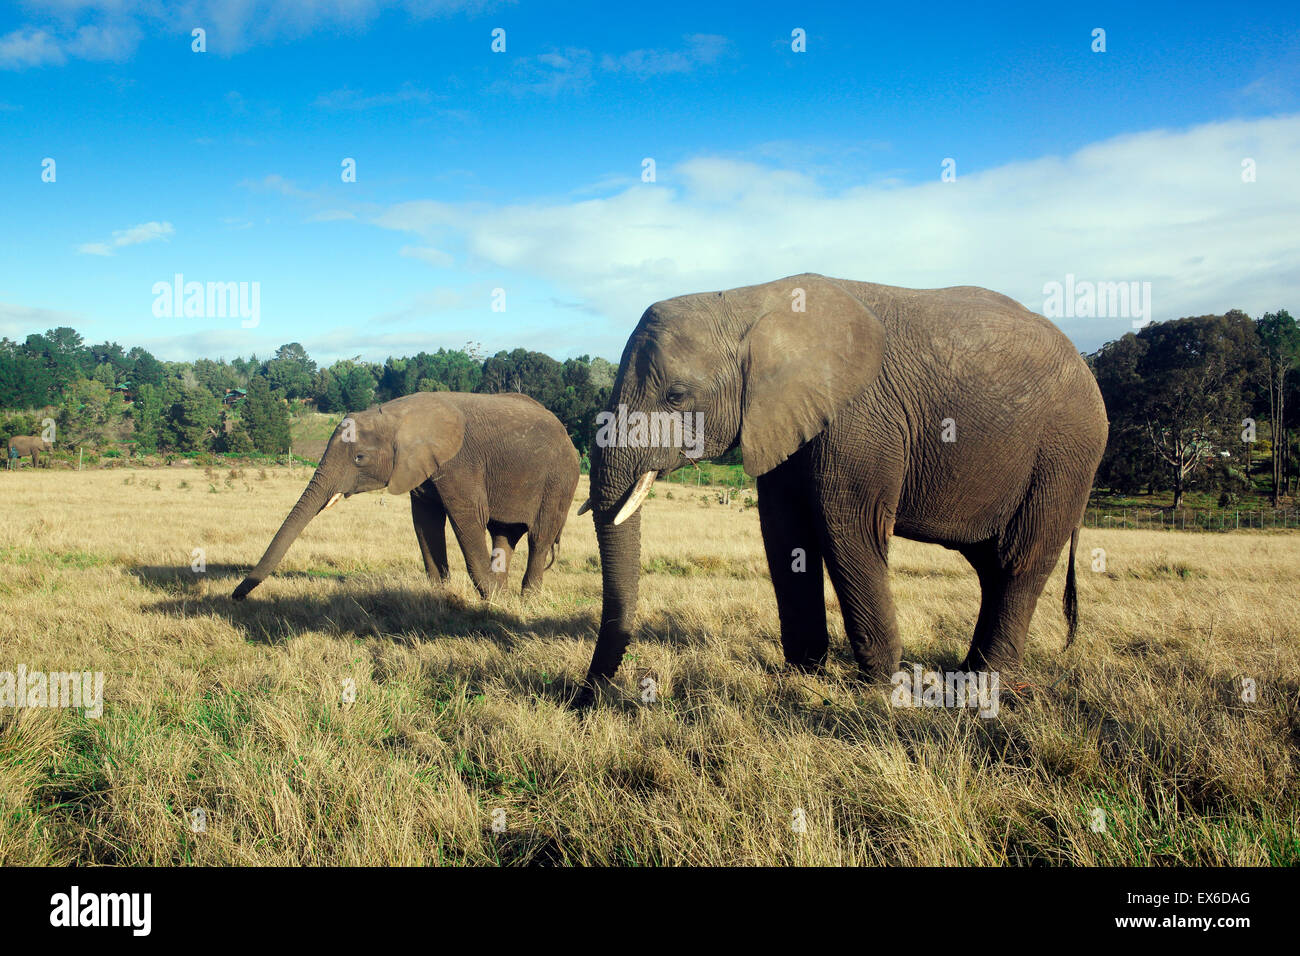 African elephants at Knysna elephant park Stock Photo